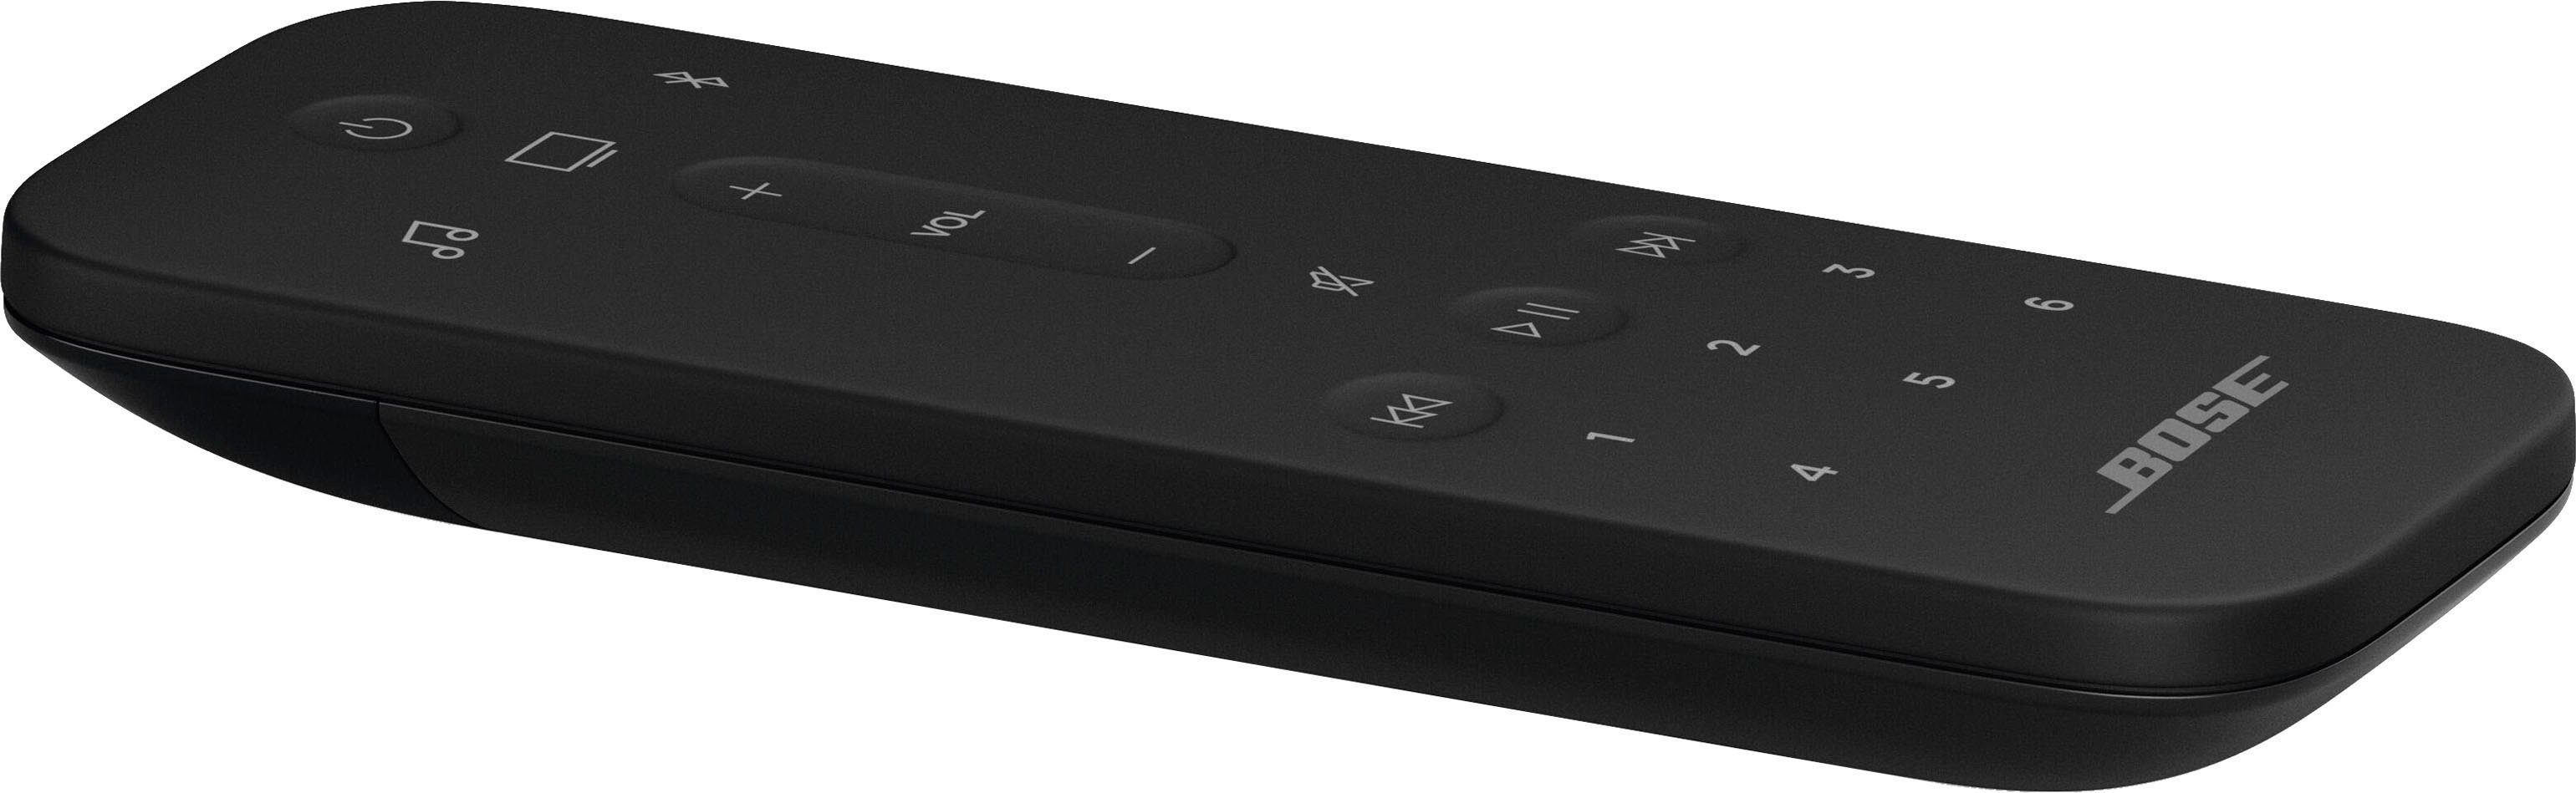 schwarz Alexa LAN Google Bose Smart mit Soundbar und Assistant) Soundbar 900 (Ethernet), (Bluetooth, Amazon